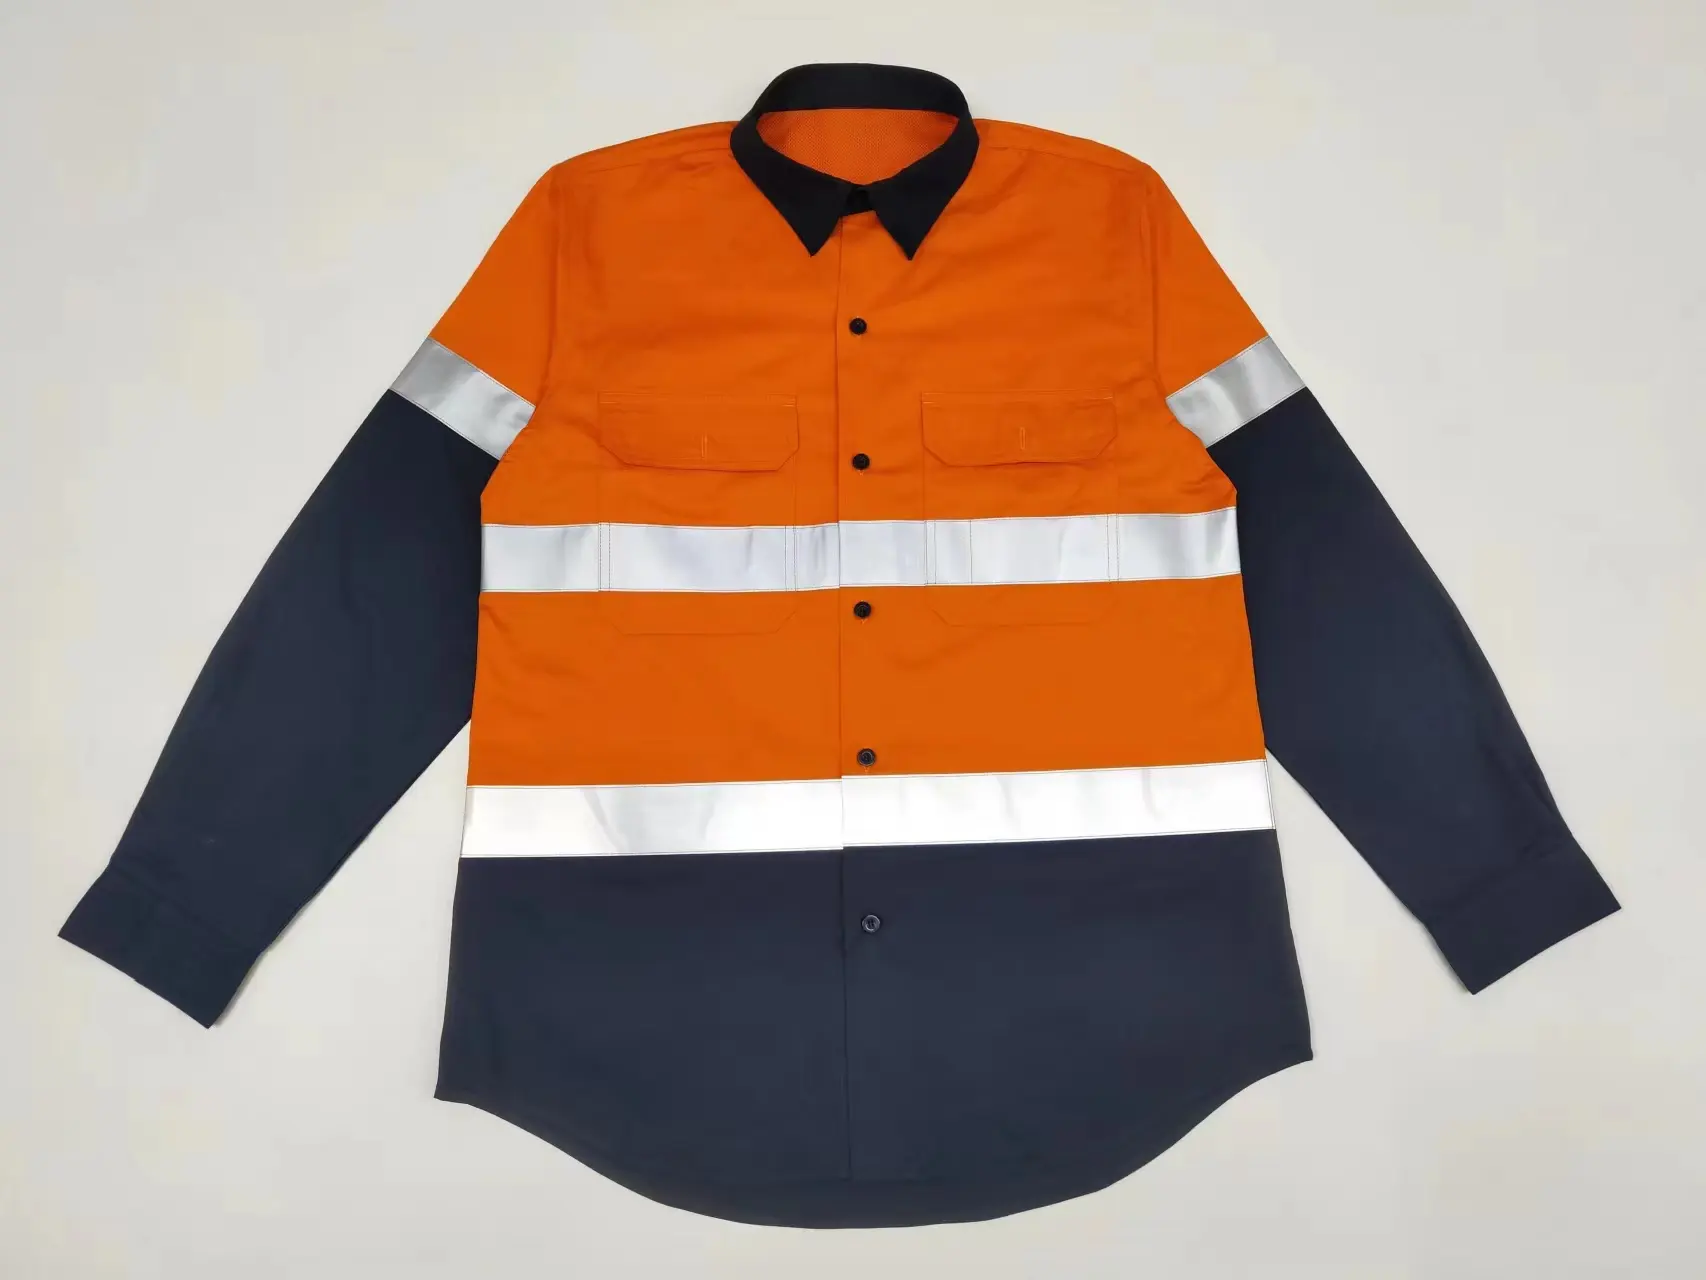 Arancione Hi Vis costruzione camicia di sicurezza riflette camicie di sicurezza stradale uniforme da lavoro con il braccio e la schiena di ventilazione